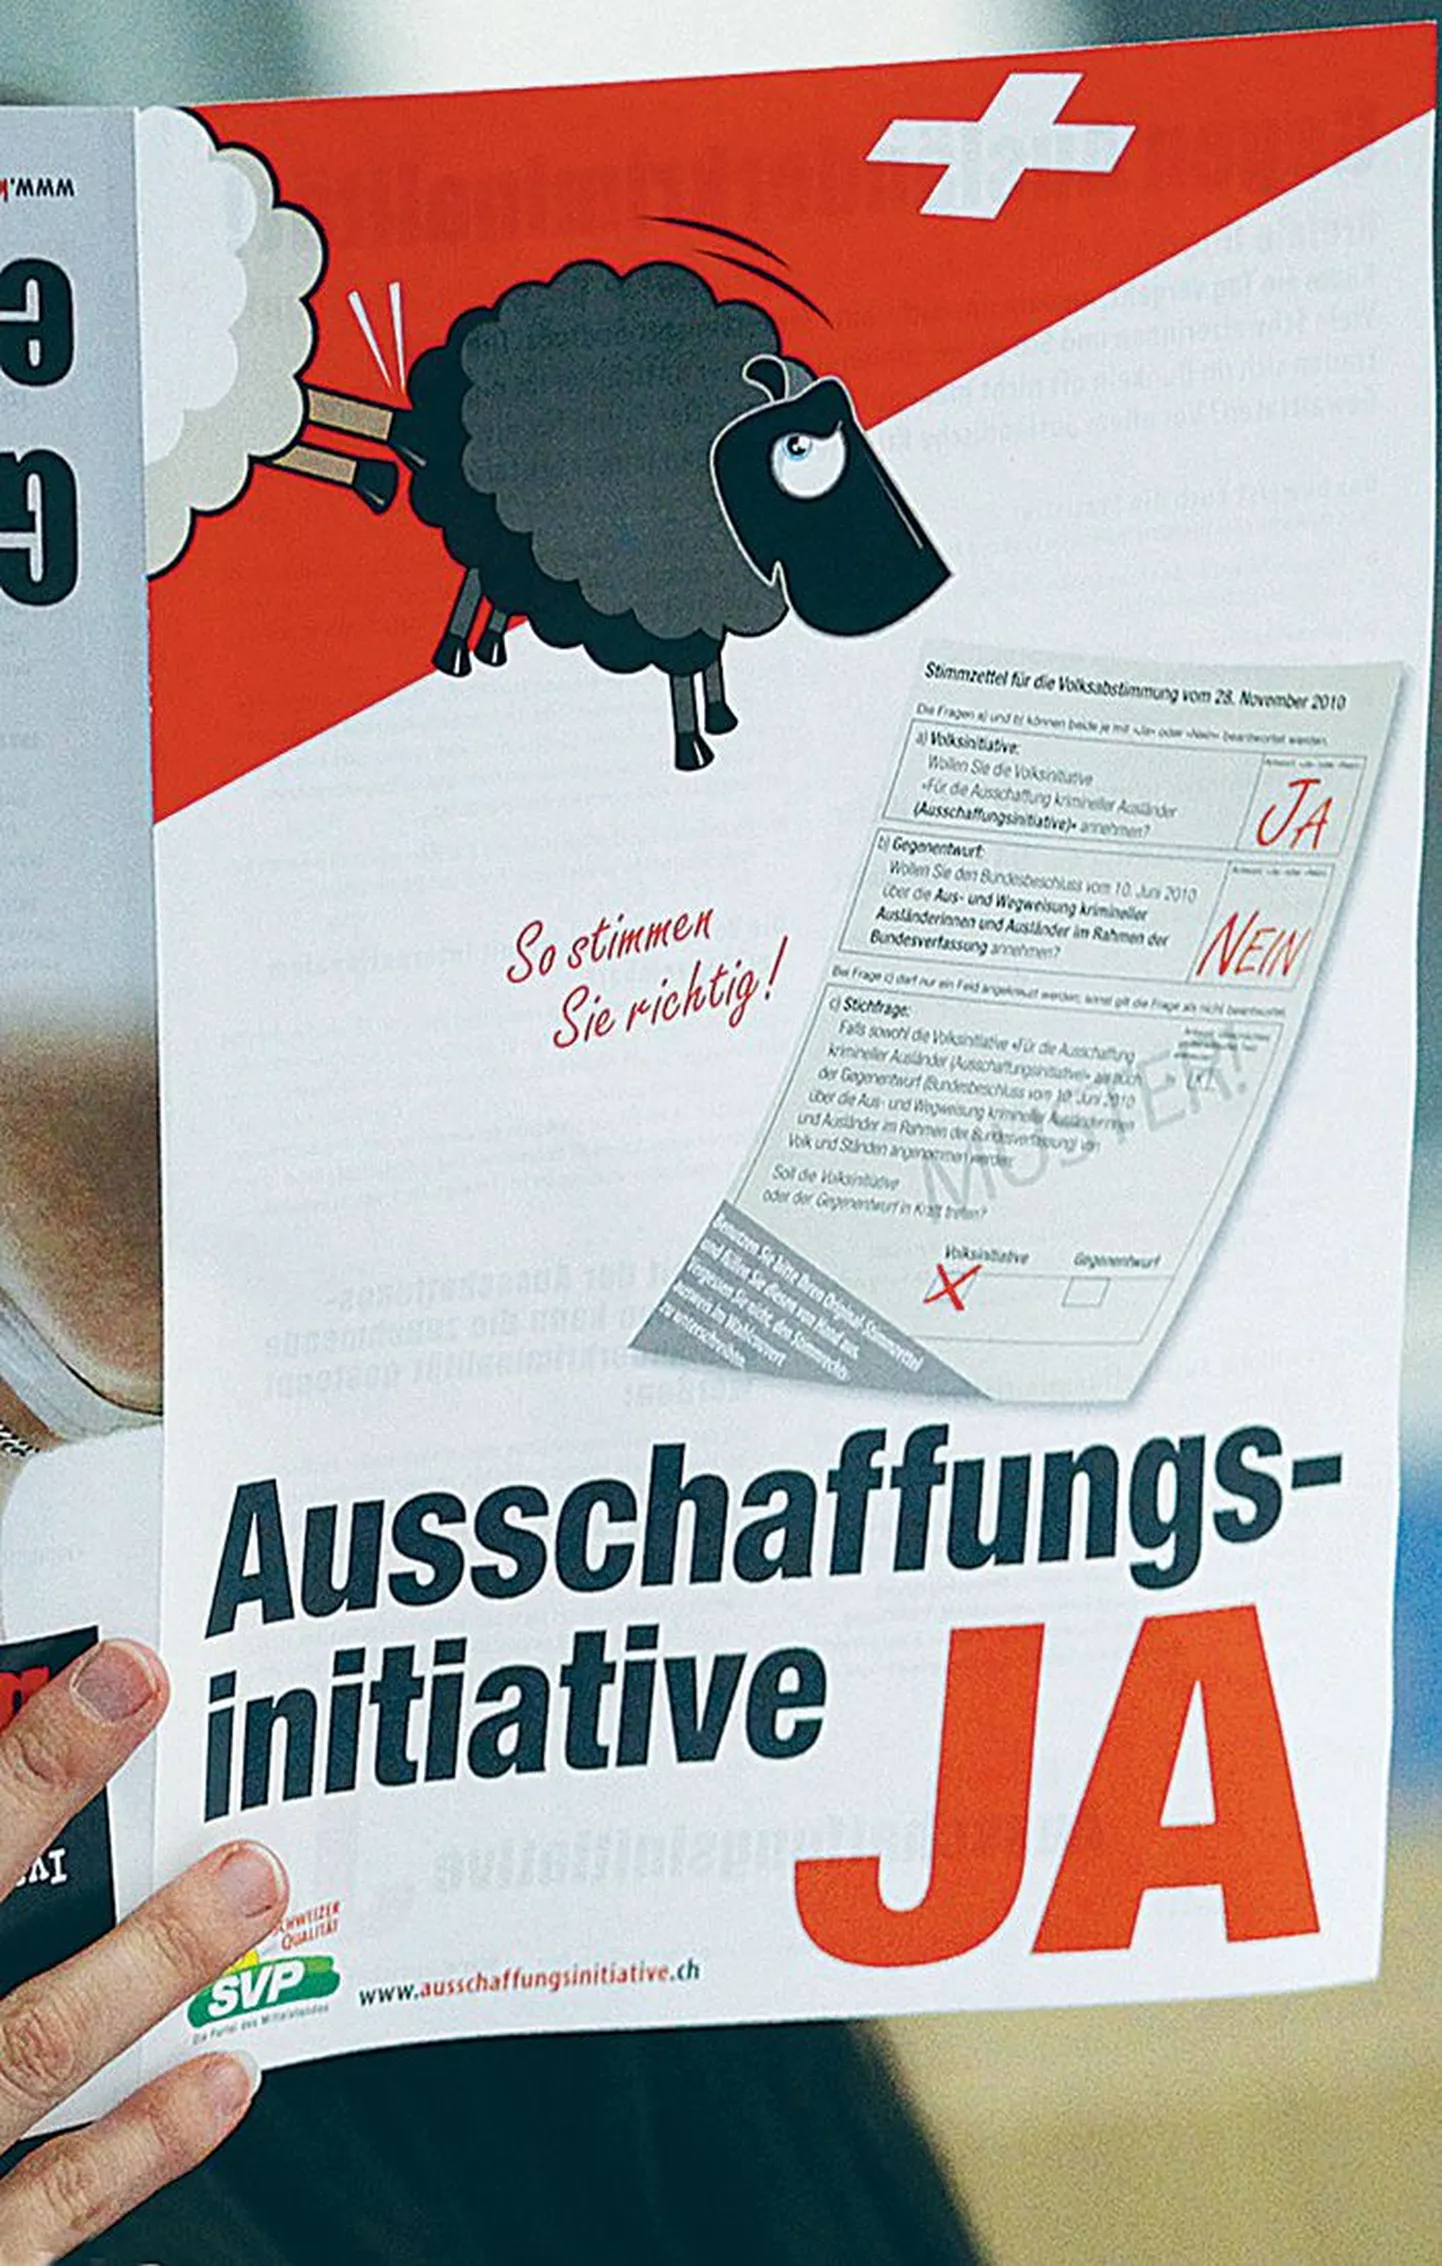 Plakatil kujutatud musta lamba tõrjumine sümboliseerib seadusi rikkunud välismaalaste väljasaatmist Šveitsist.